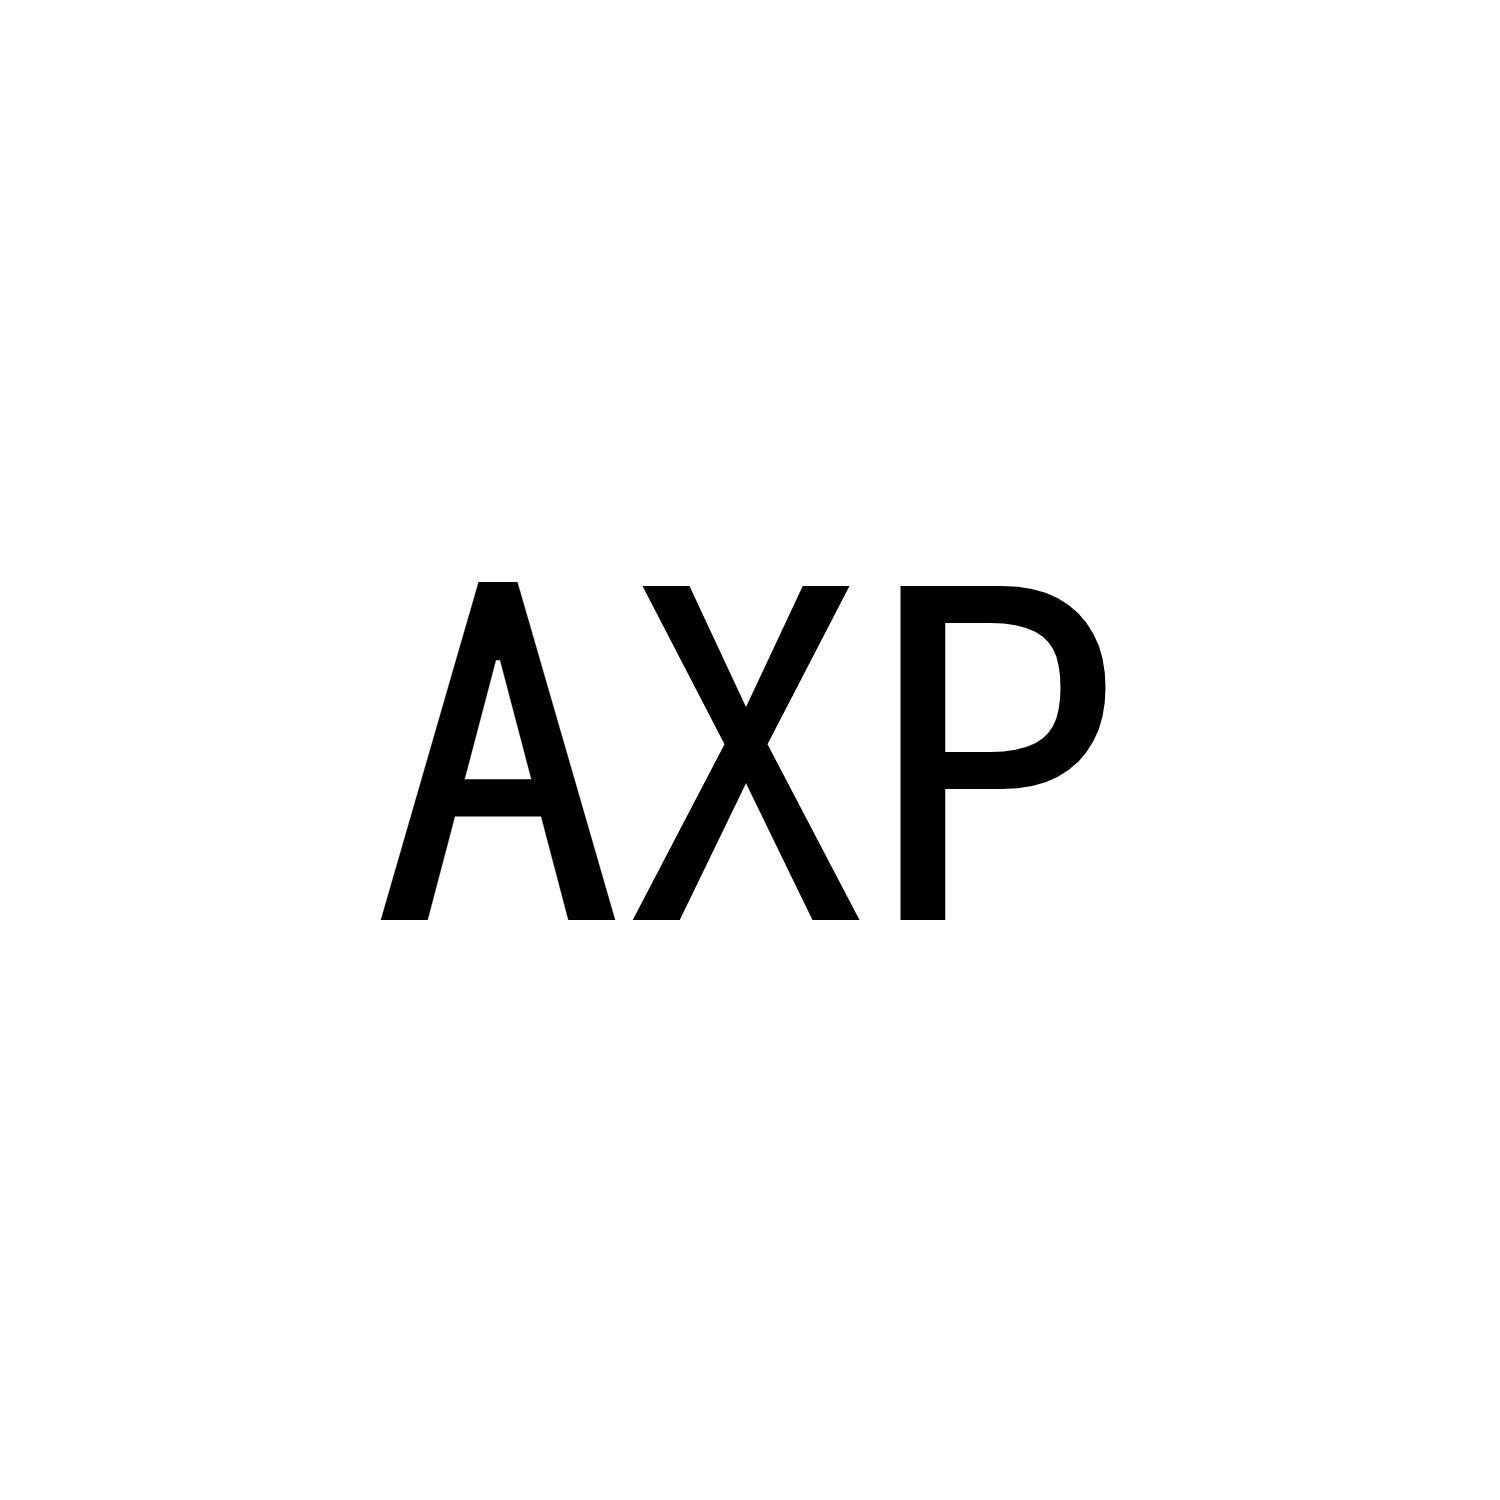 AXP